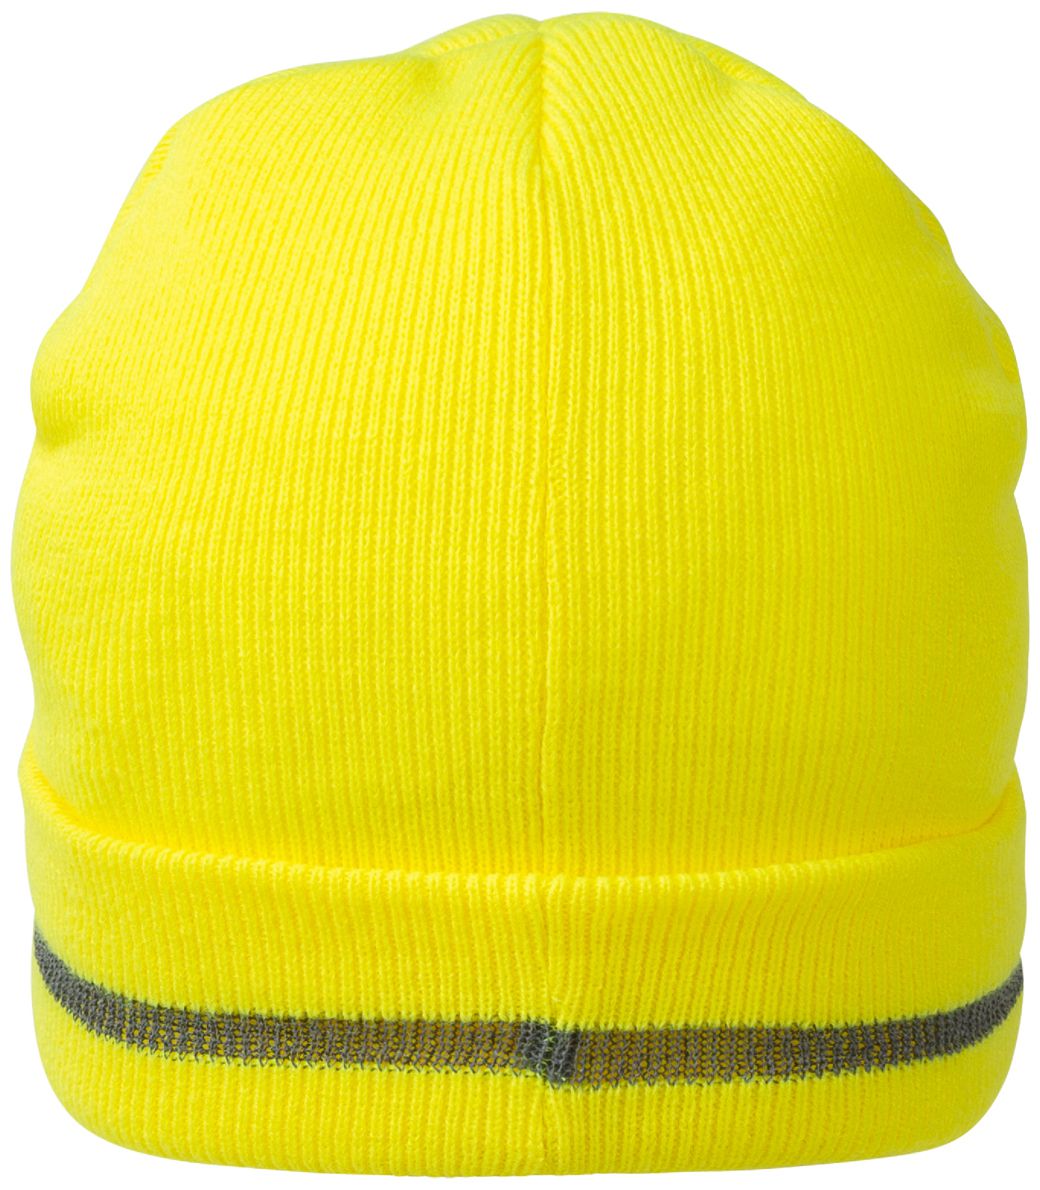 NITRAS 730 KIDS Winter-Mütze - Strick-Mütze für Kinder - warm & weich gefütterter Beanie für Jungen & Mädchen - Warngelb